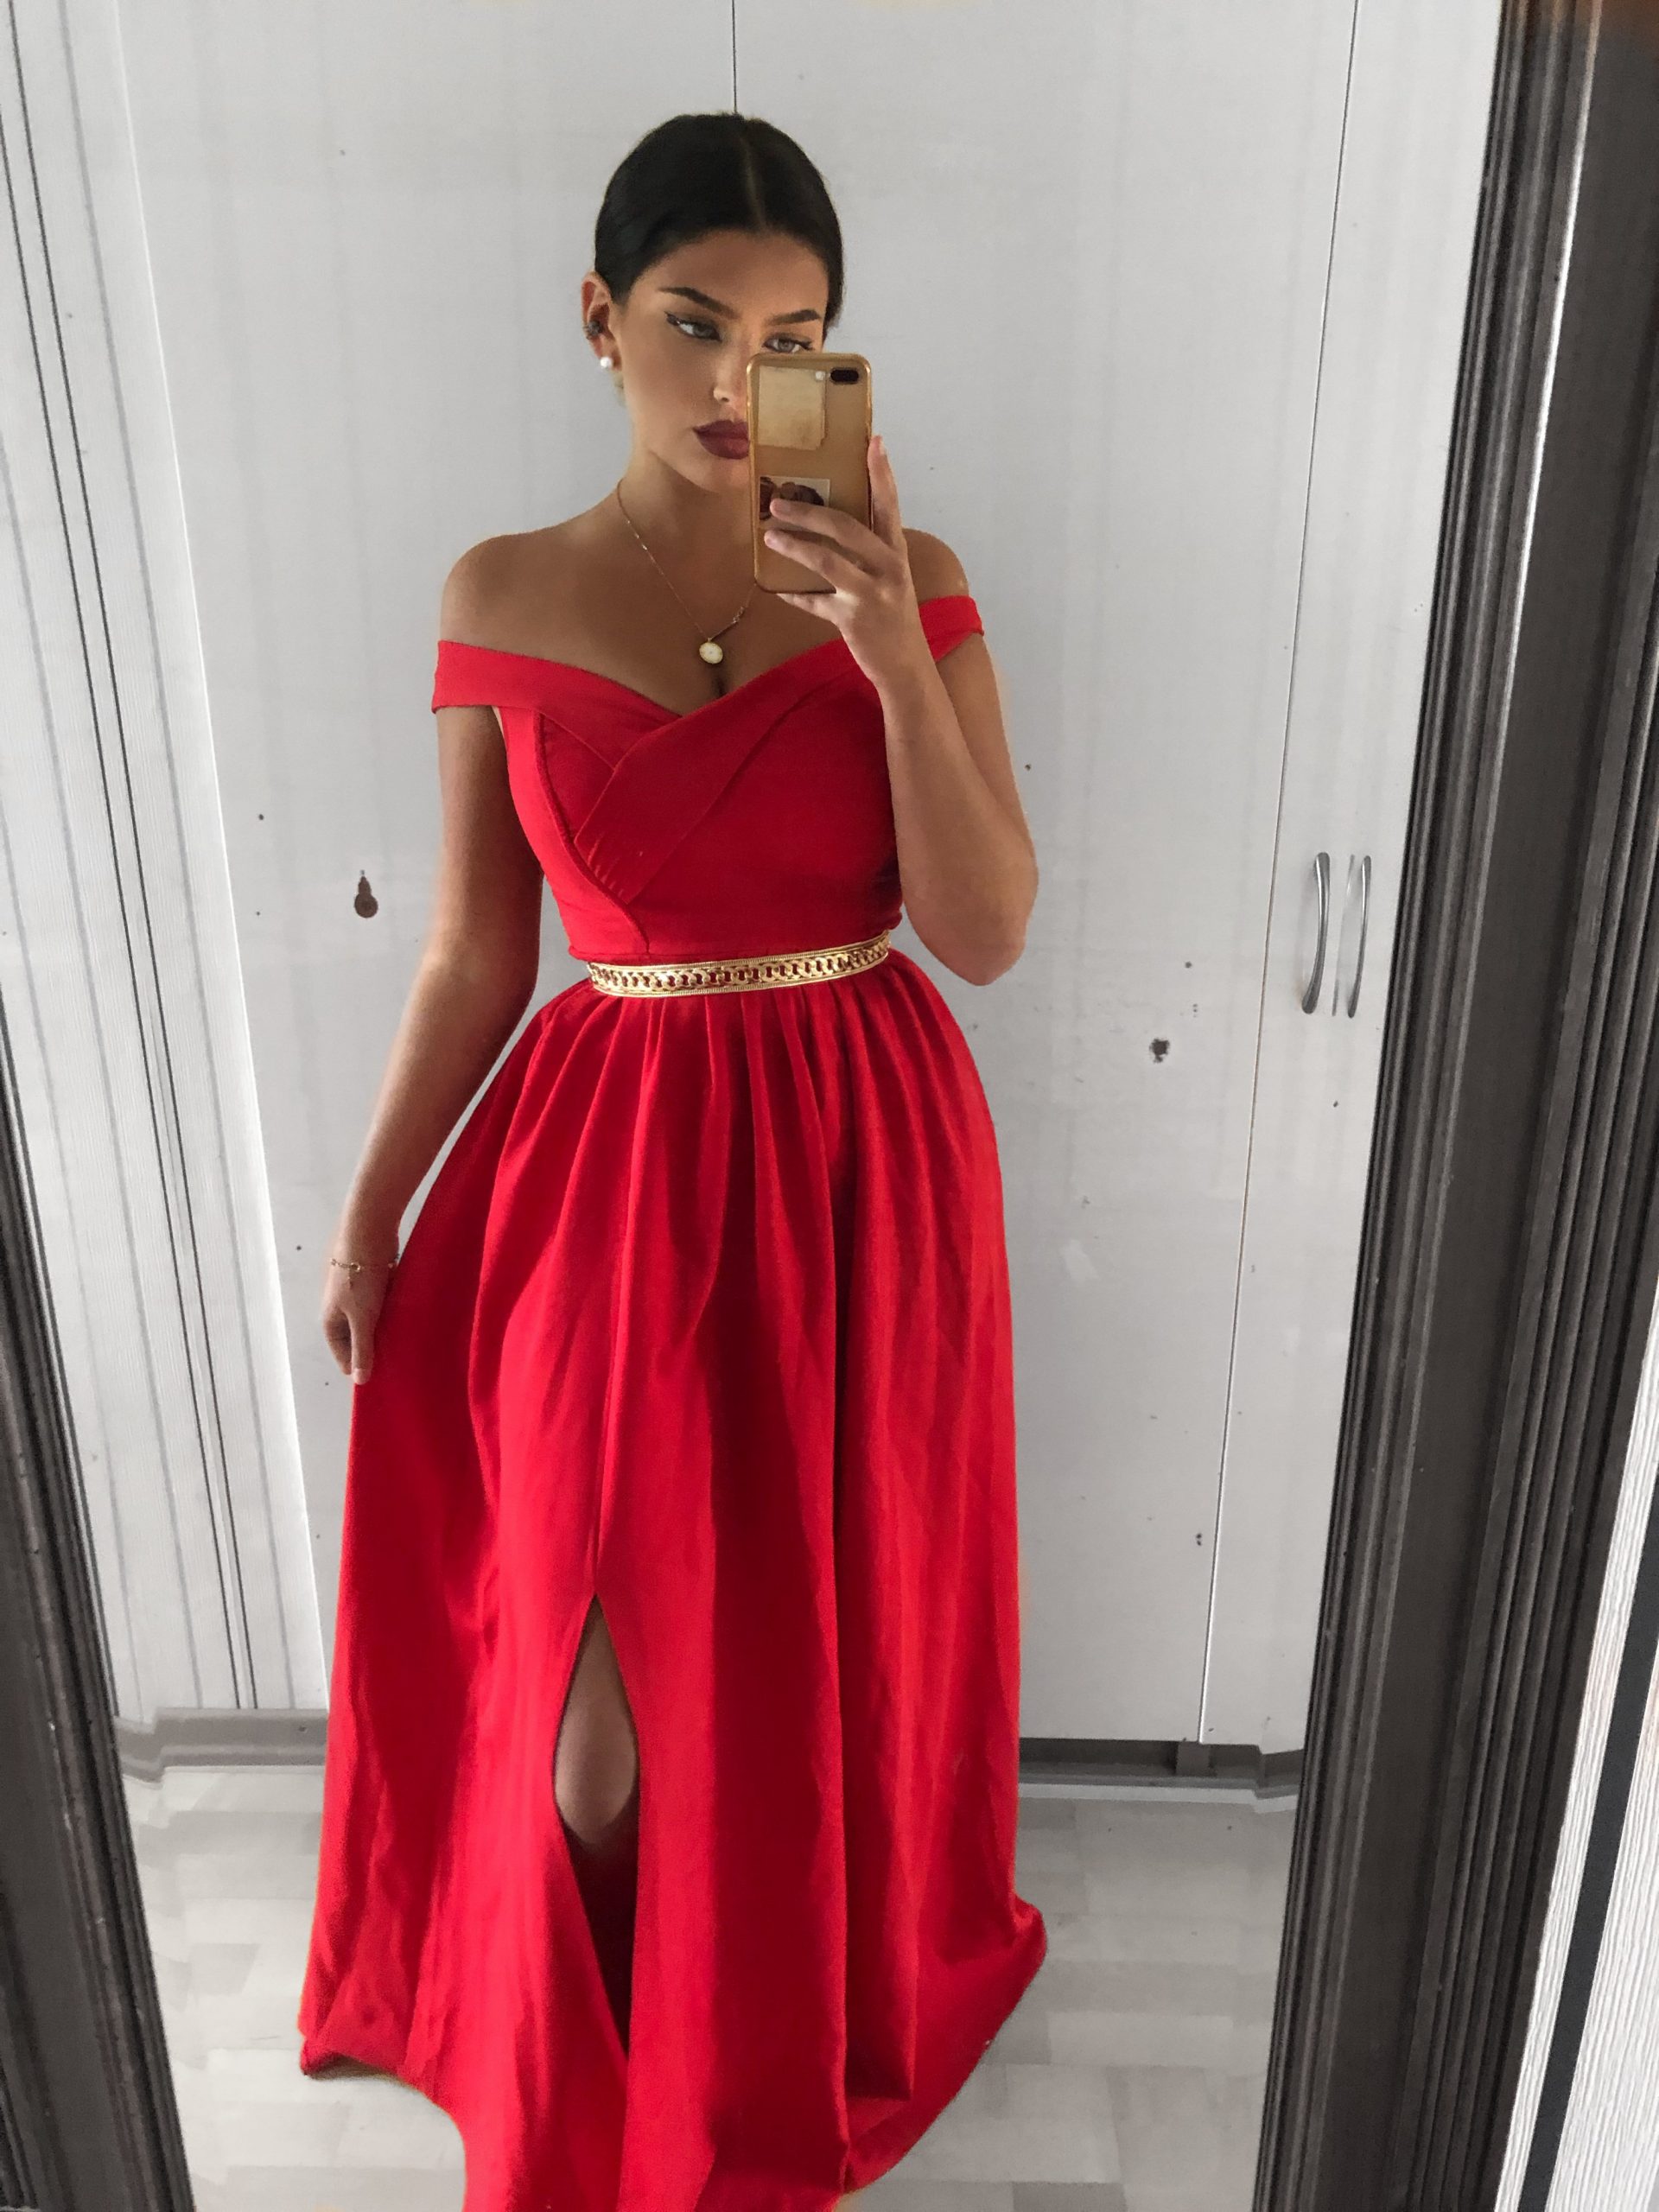 10 Schön Abendkleid In Rot Bester PreisAbend Genial Abendkleid In Rot für 2019